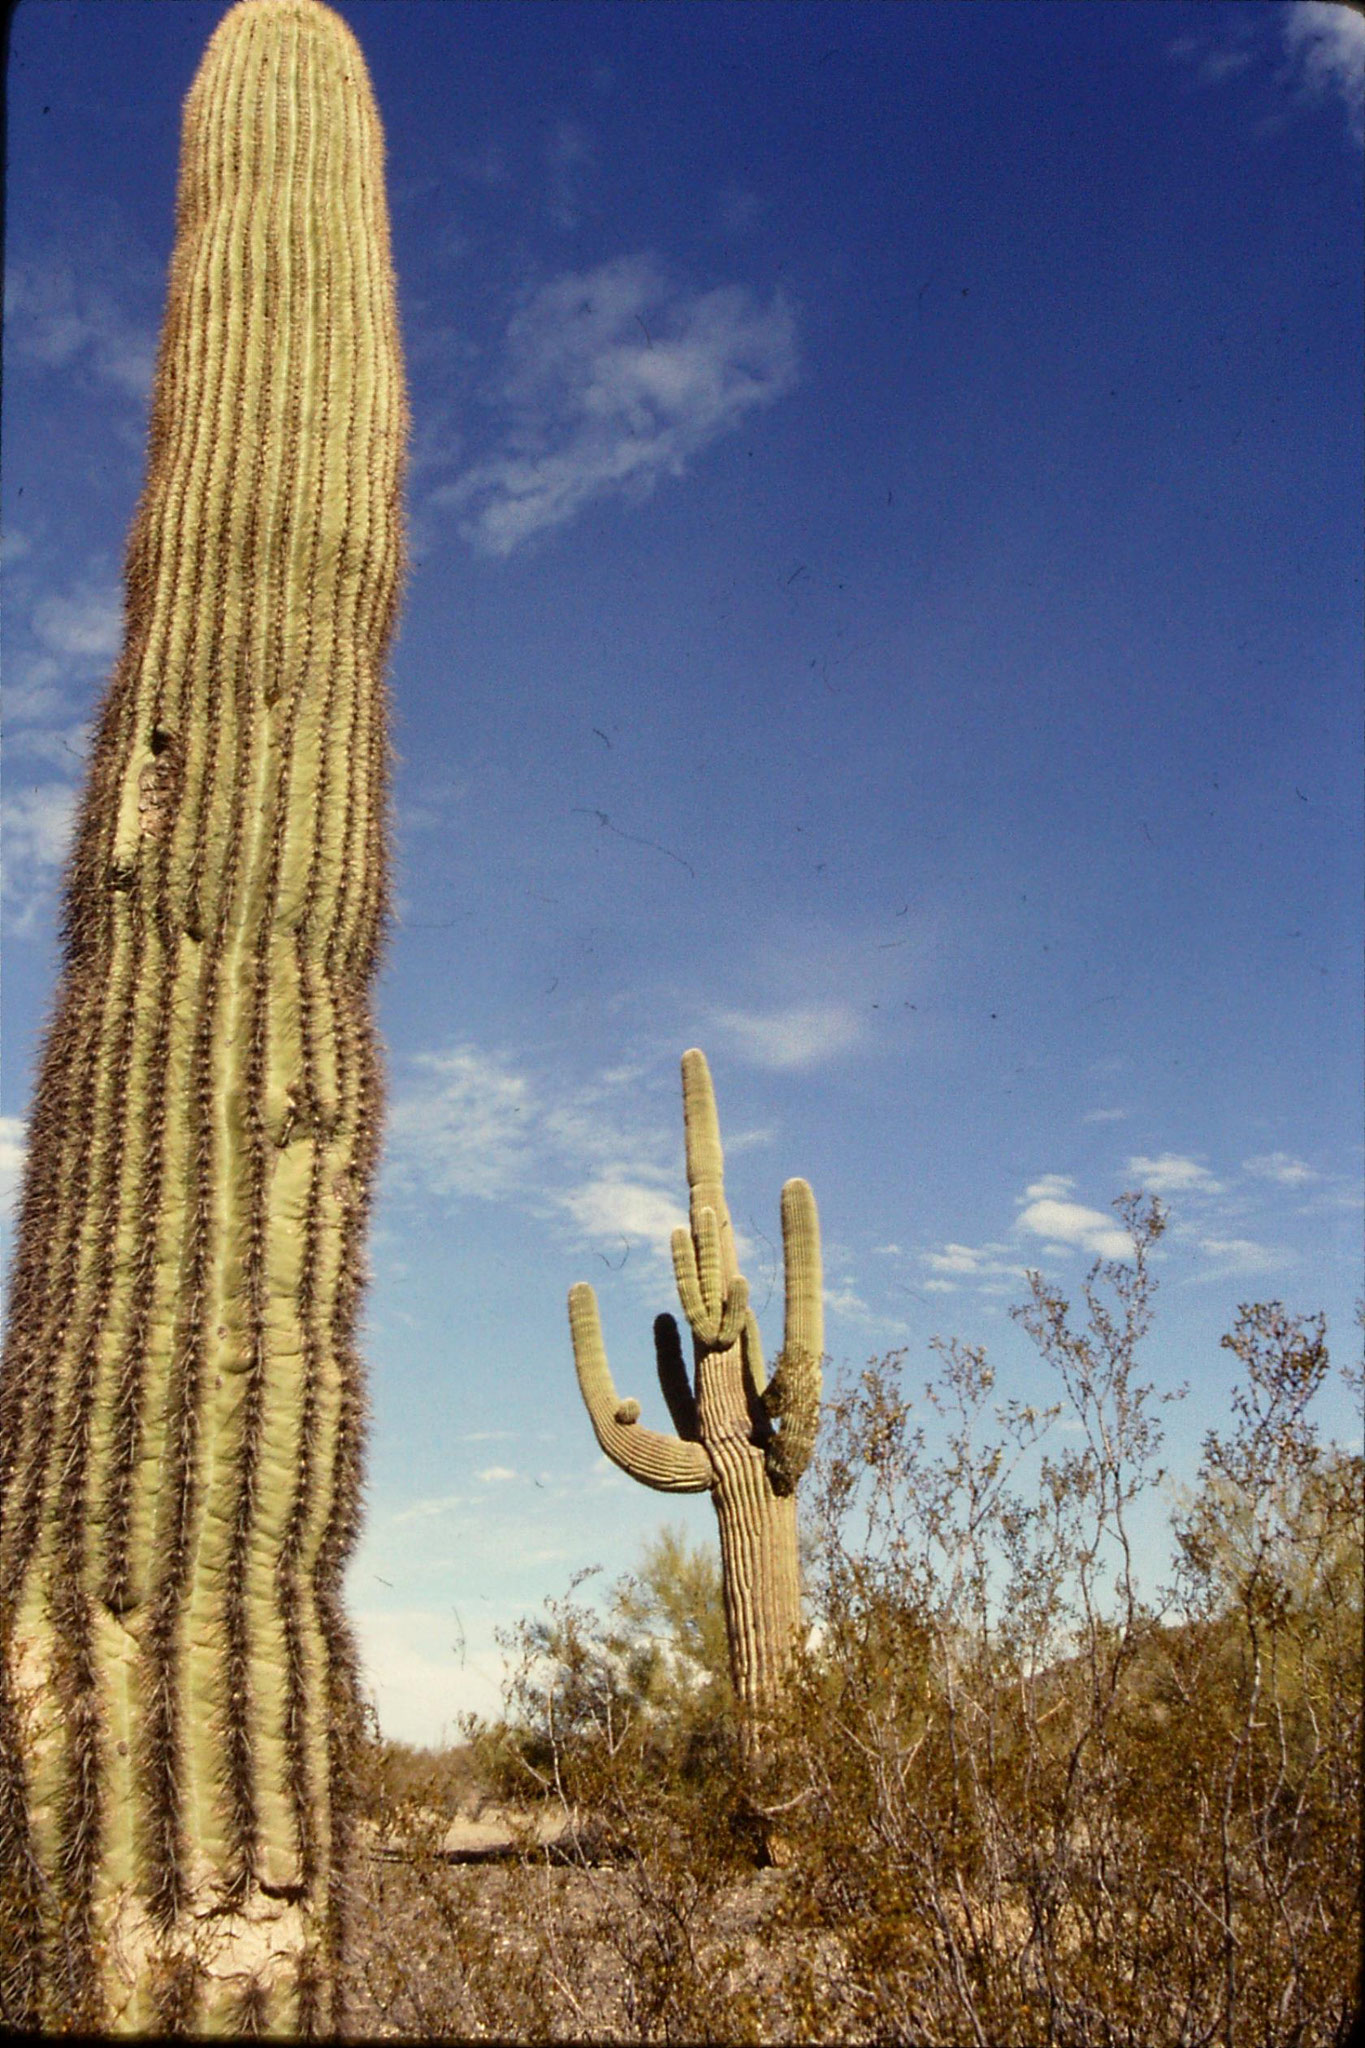 11/12/1990: 6: Saguaro cacti (10-20ft) between Salome and I-10